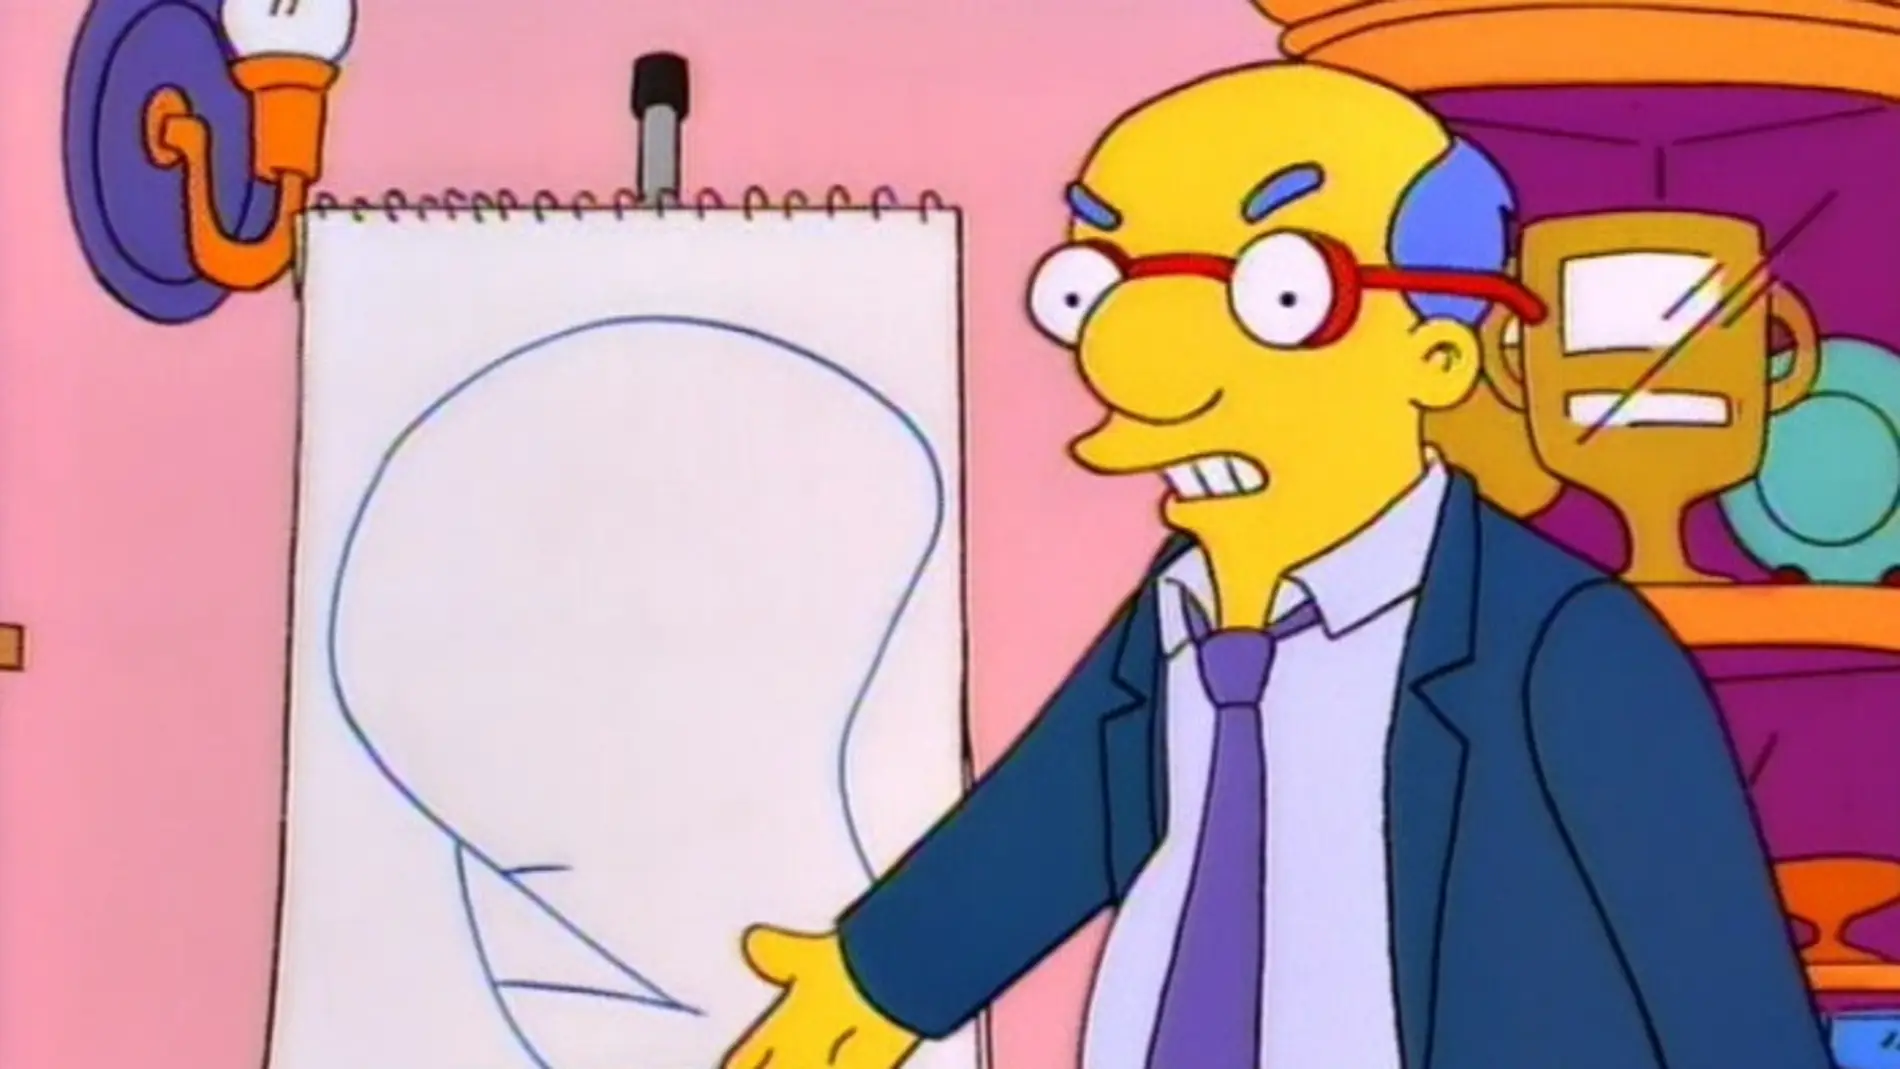 El padre de Milhouse dibuja la "dignidad"